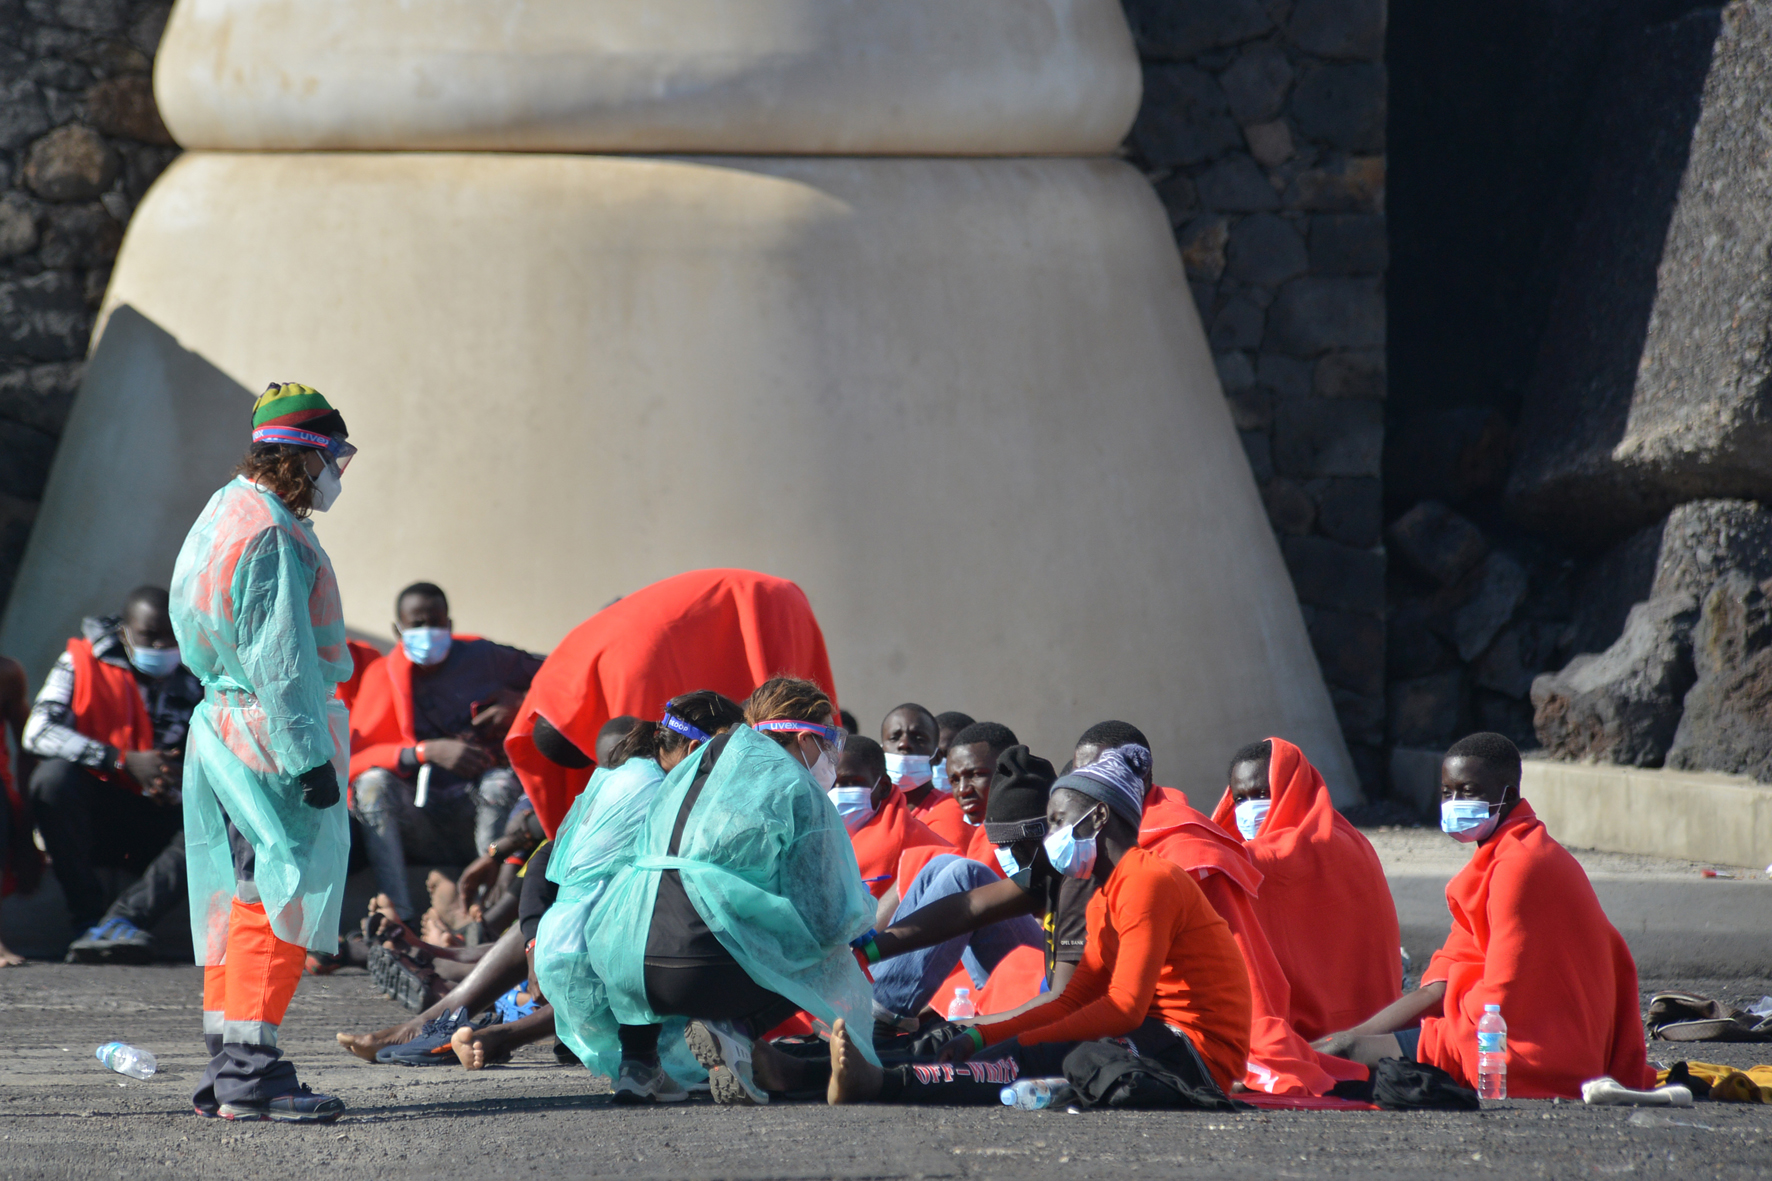 Llega un nuevo cayuco a El Hierro con 65 inmigrantes a bordo